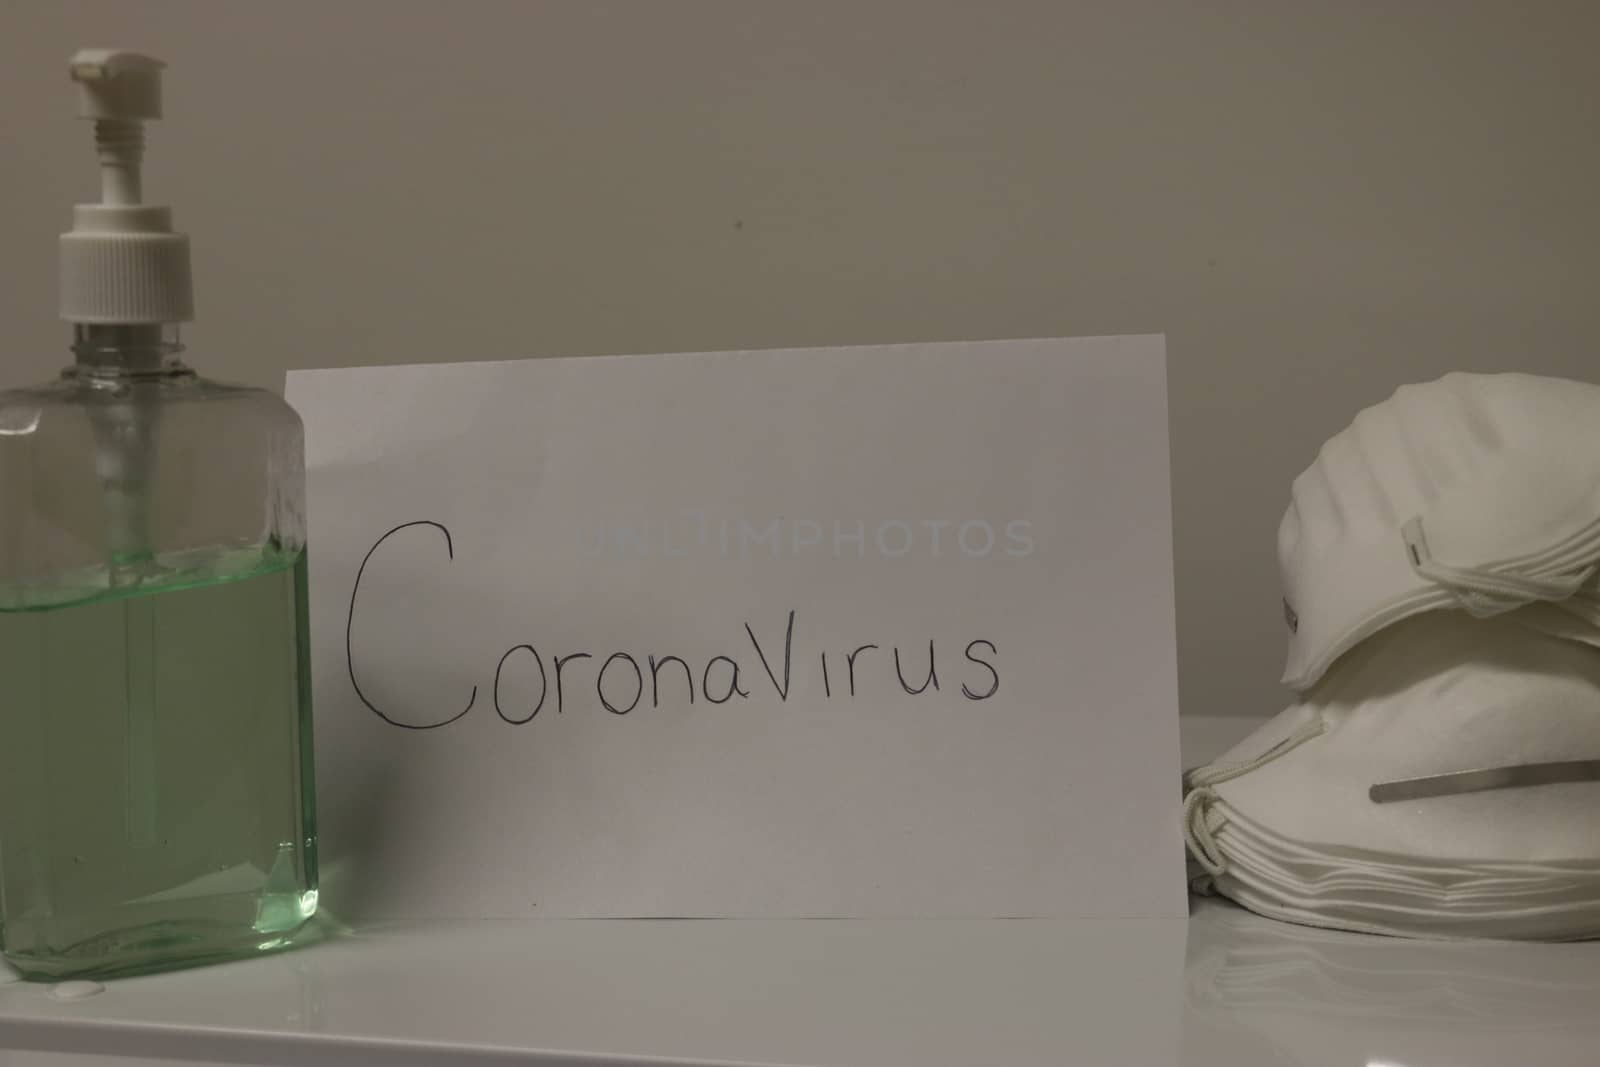 Coronavirus Hand Sanitizer Bottle Dispensing Rubbing Alcohol Gel For Hands Hygiene Health Care